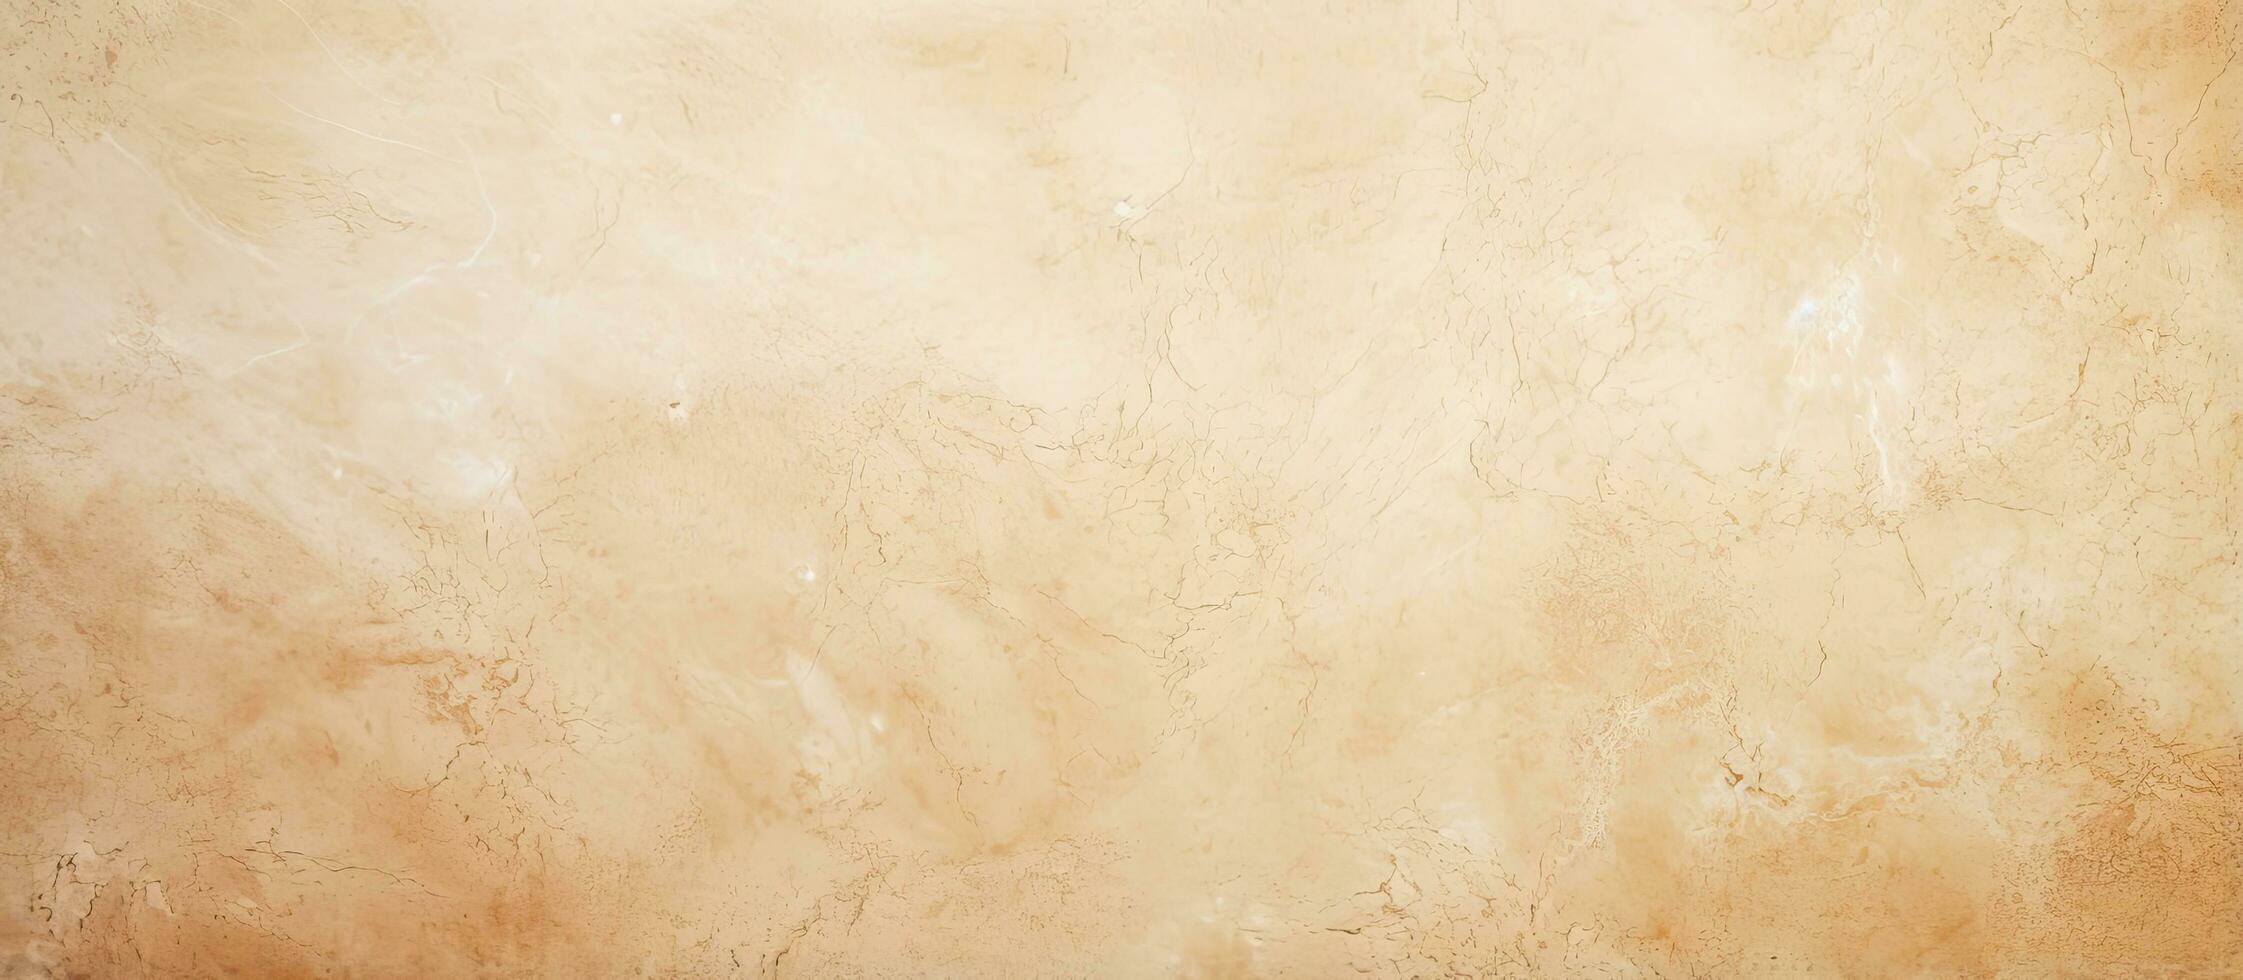 proche en haut de une ancien marron papier texture sur une plaine crème Couleur ciment mur mettant en valeur beige et lumière marron nuances de Naturel pierre photo